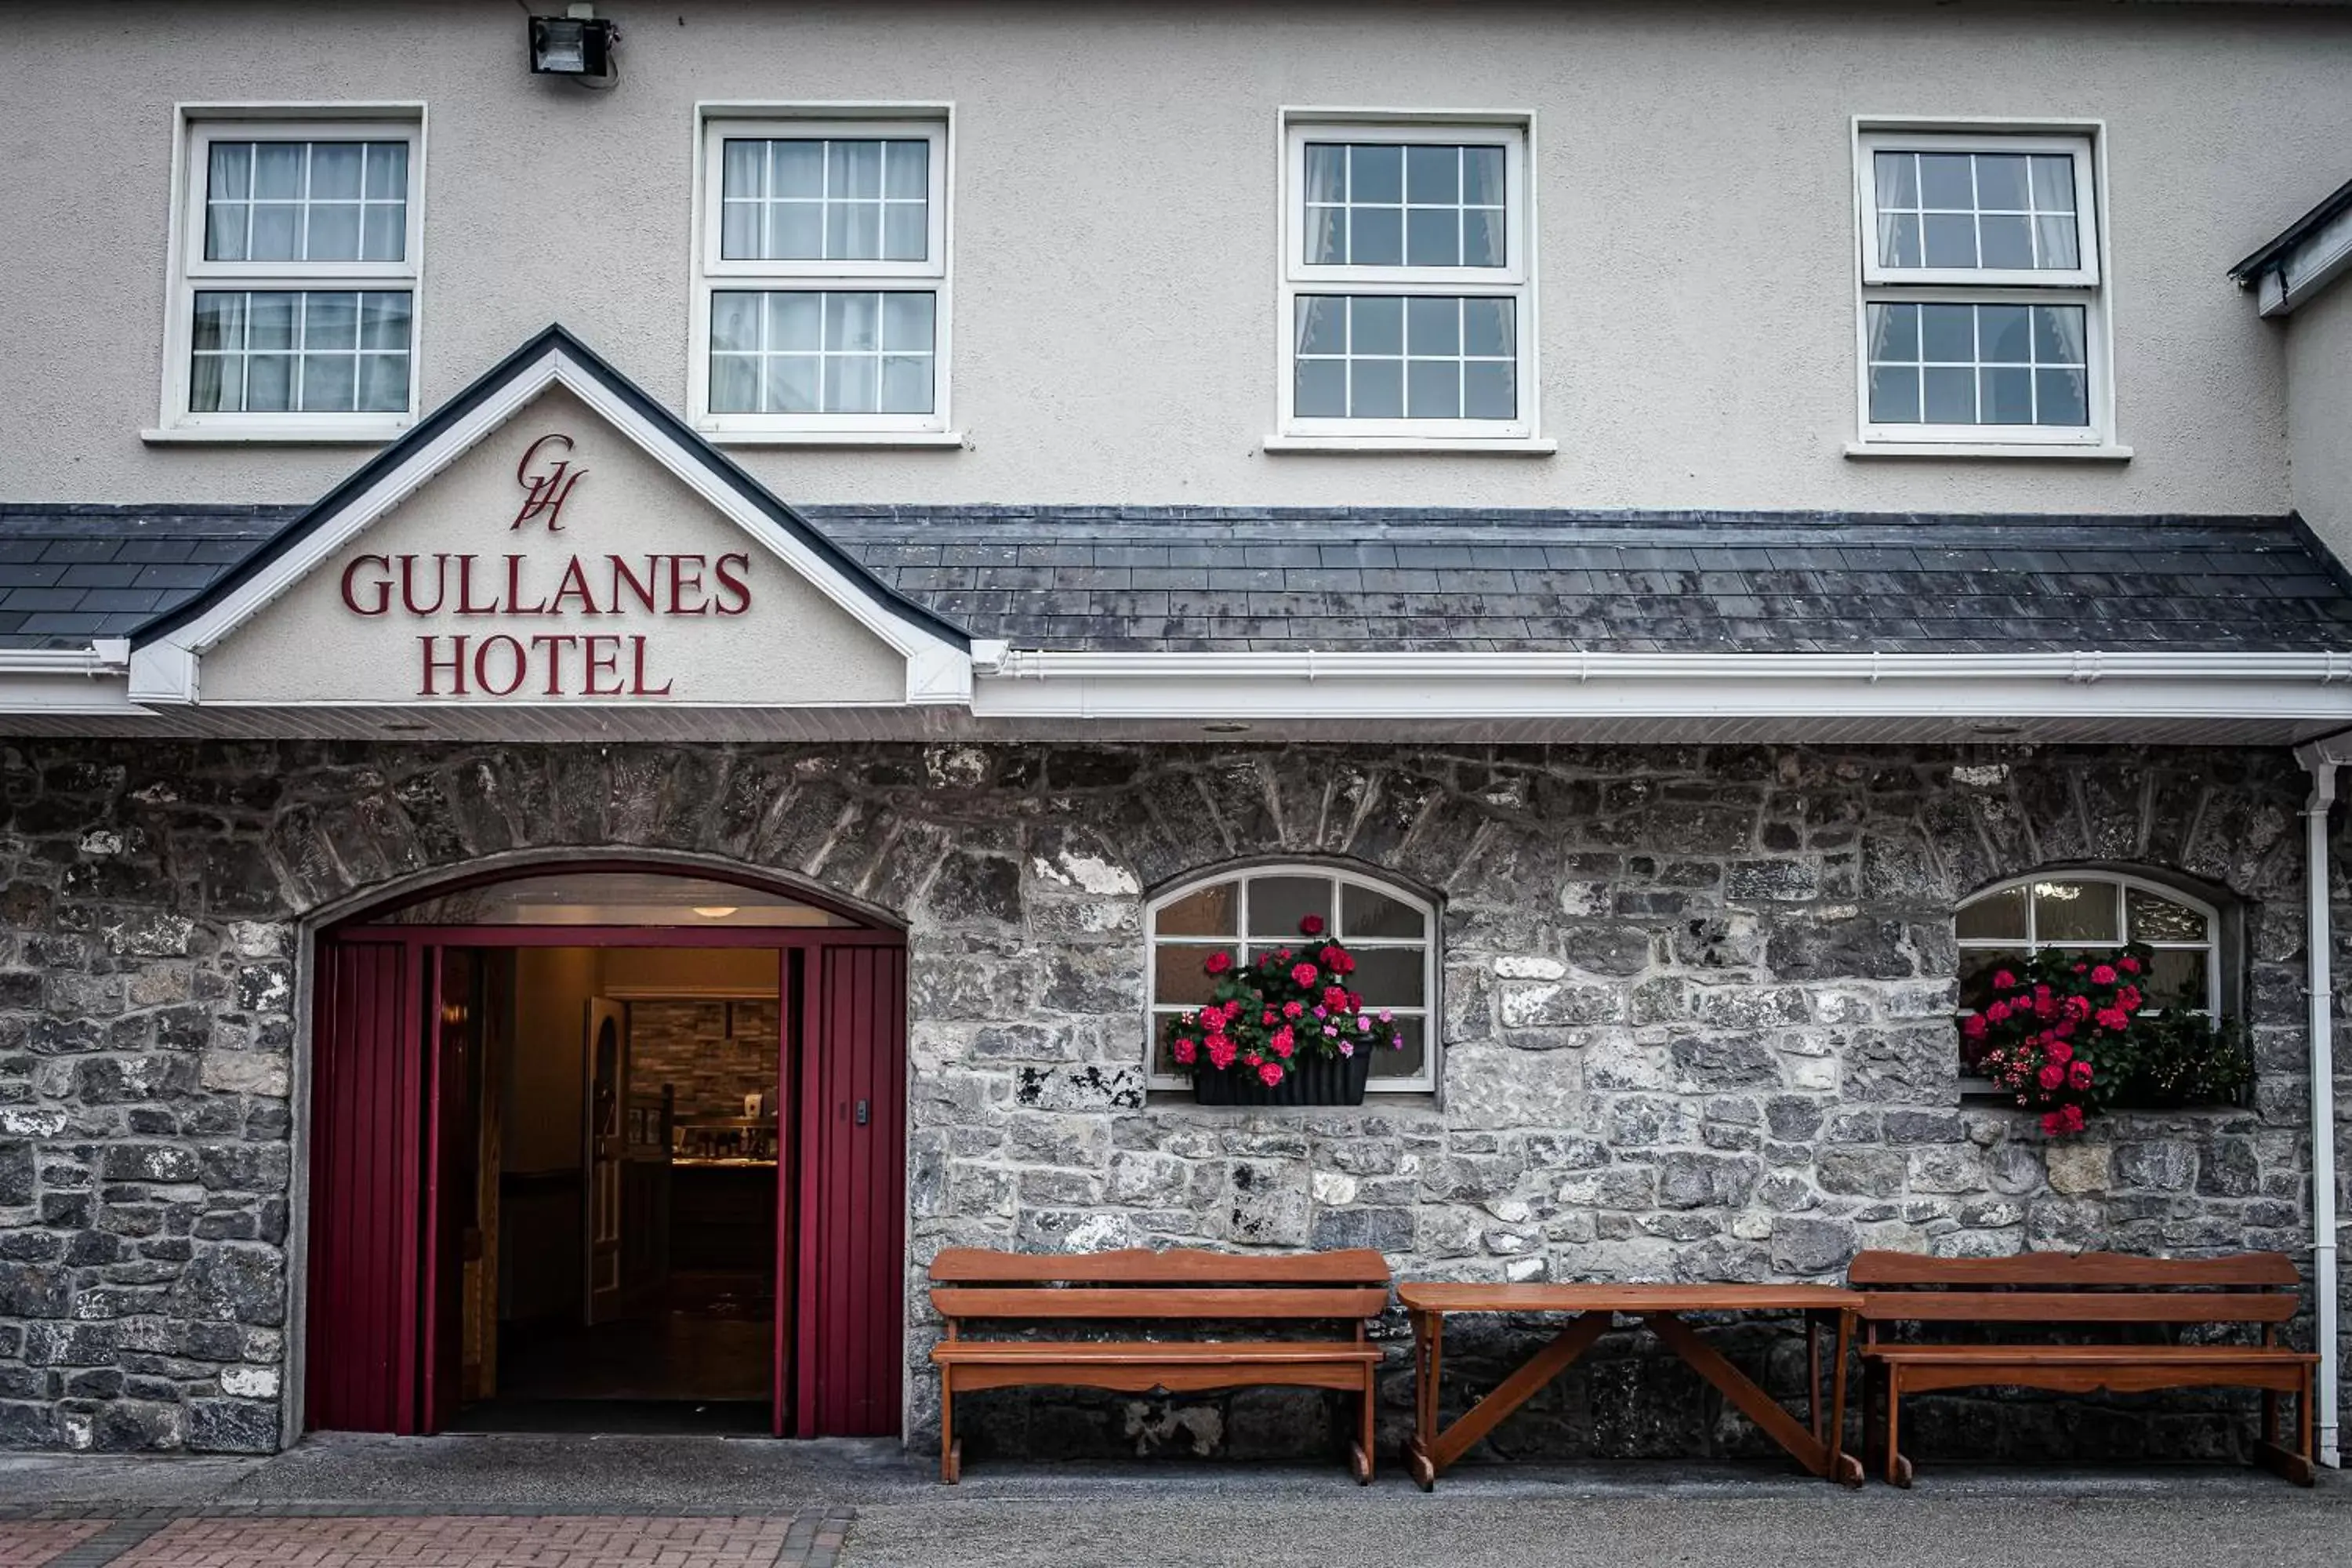 Lobby or reception in Gullane's Hotel